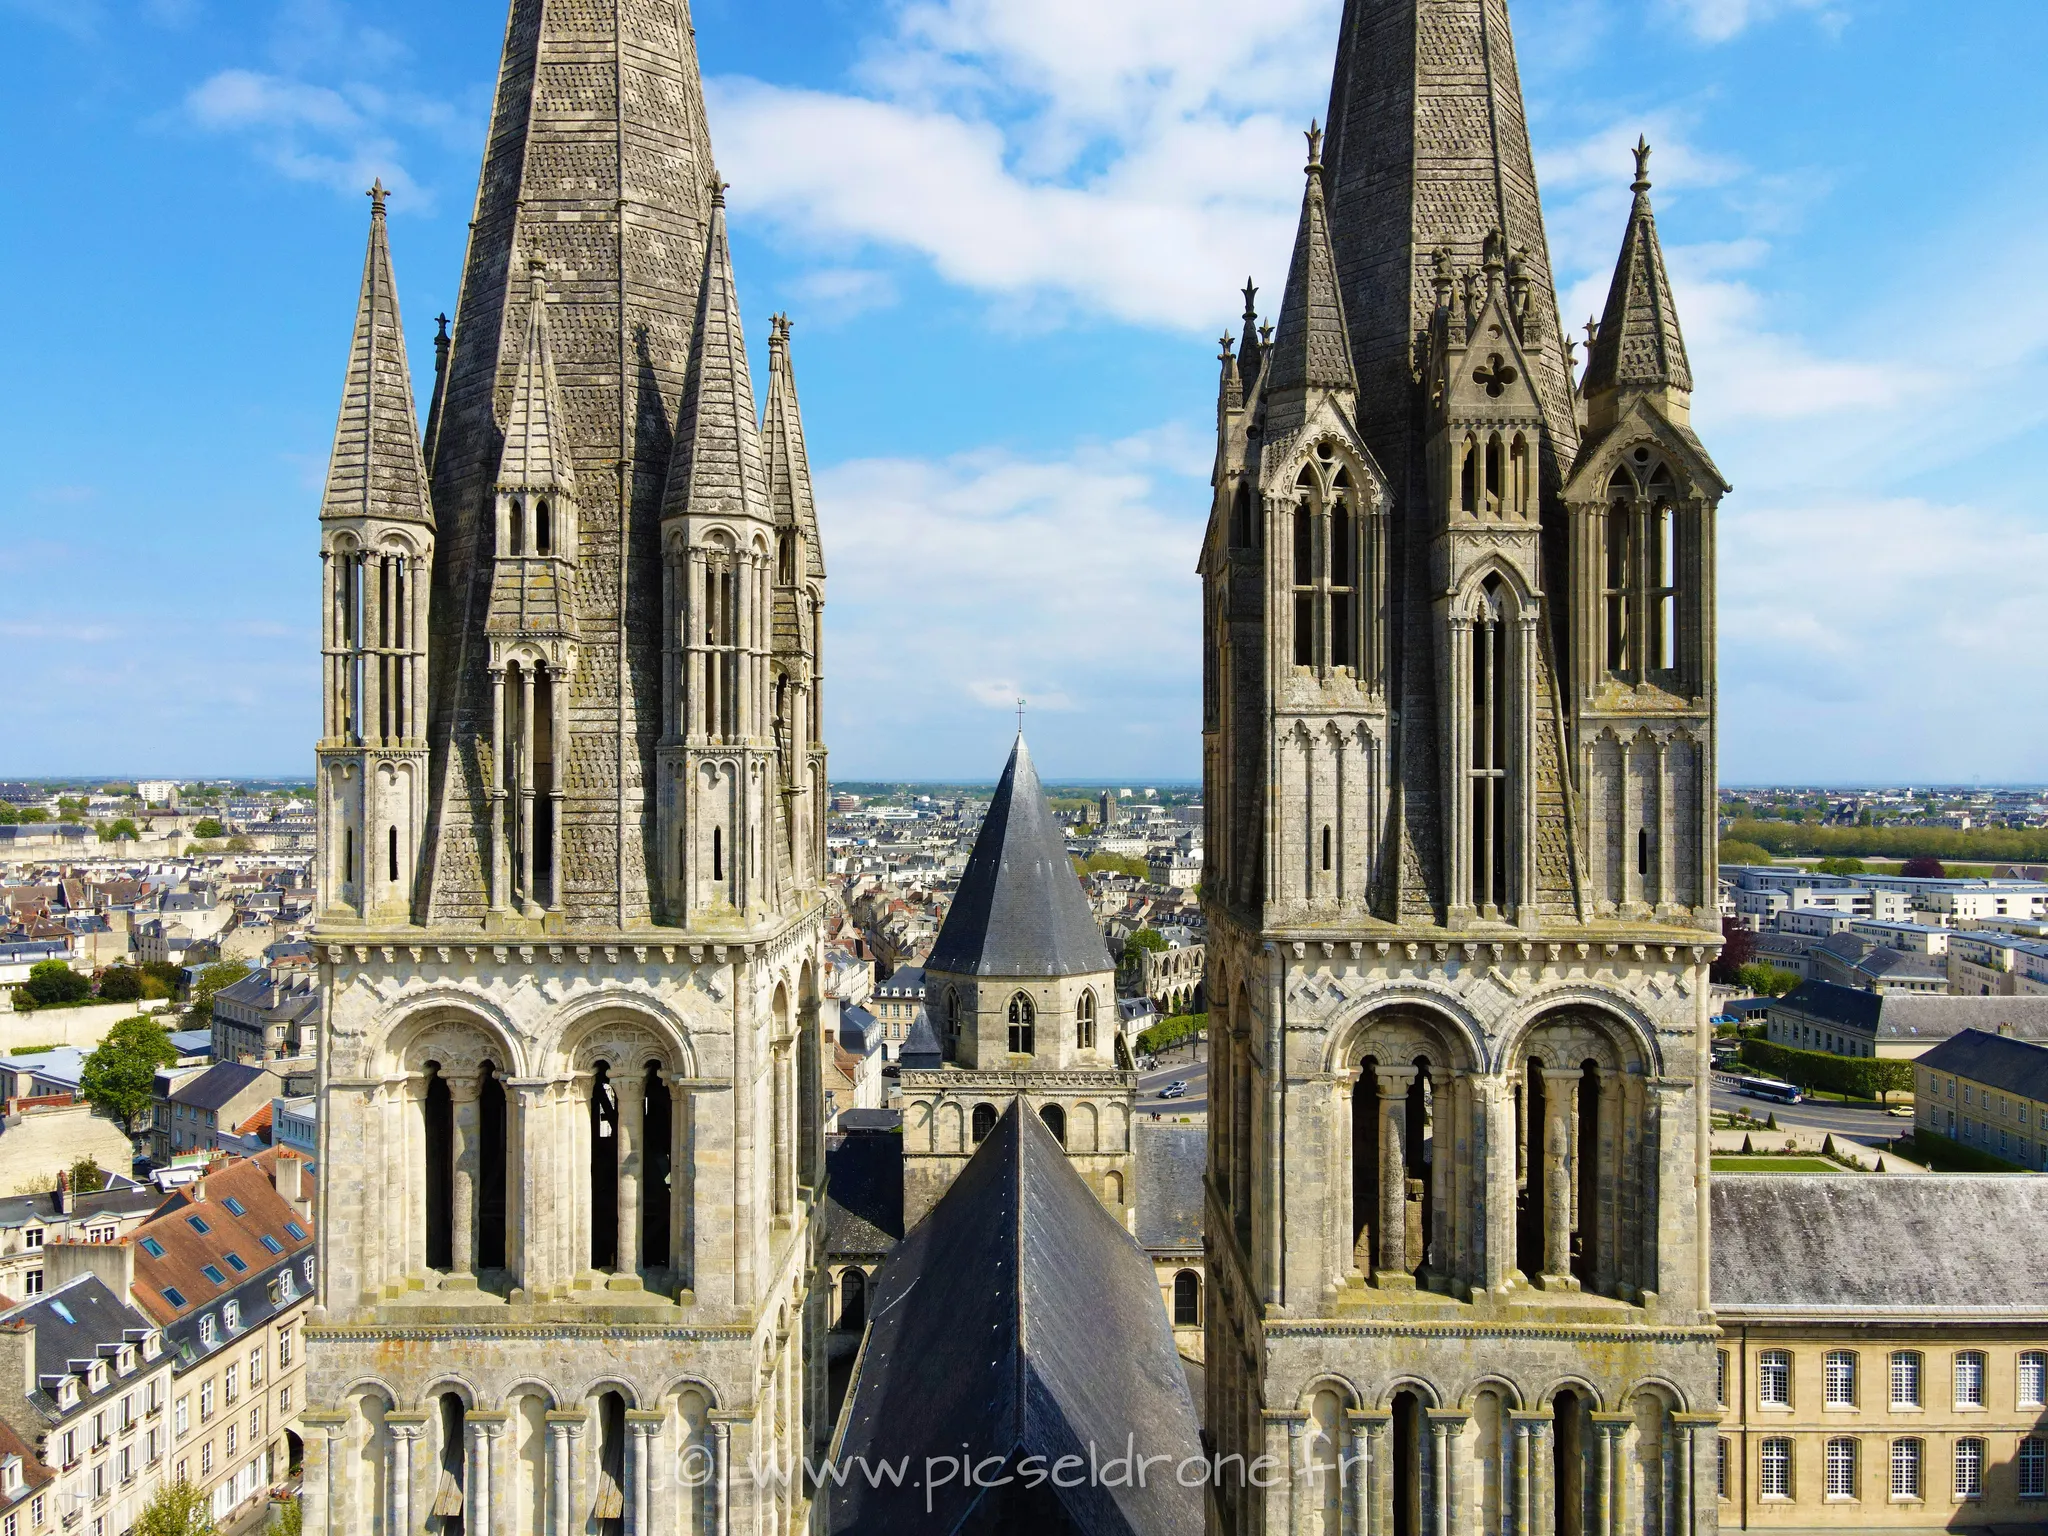 Prise de vue aérienne, photo aérienne de la Mairie de Caen, Église Saint-Étienne, Abbaye aux Hommes, télépilote drone, pilote drone, PICSEL DRONE, CAEN